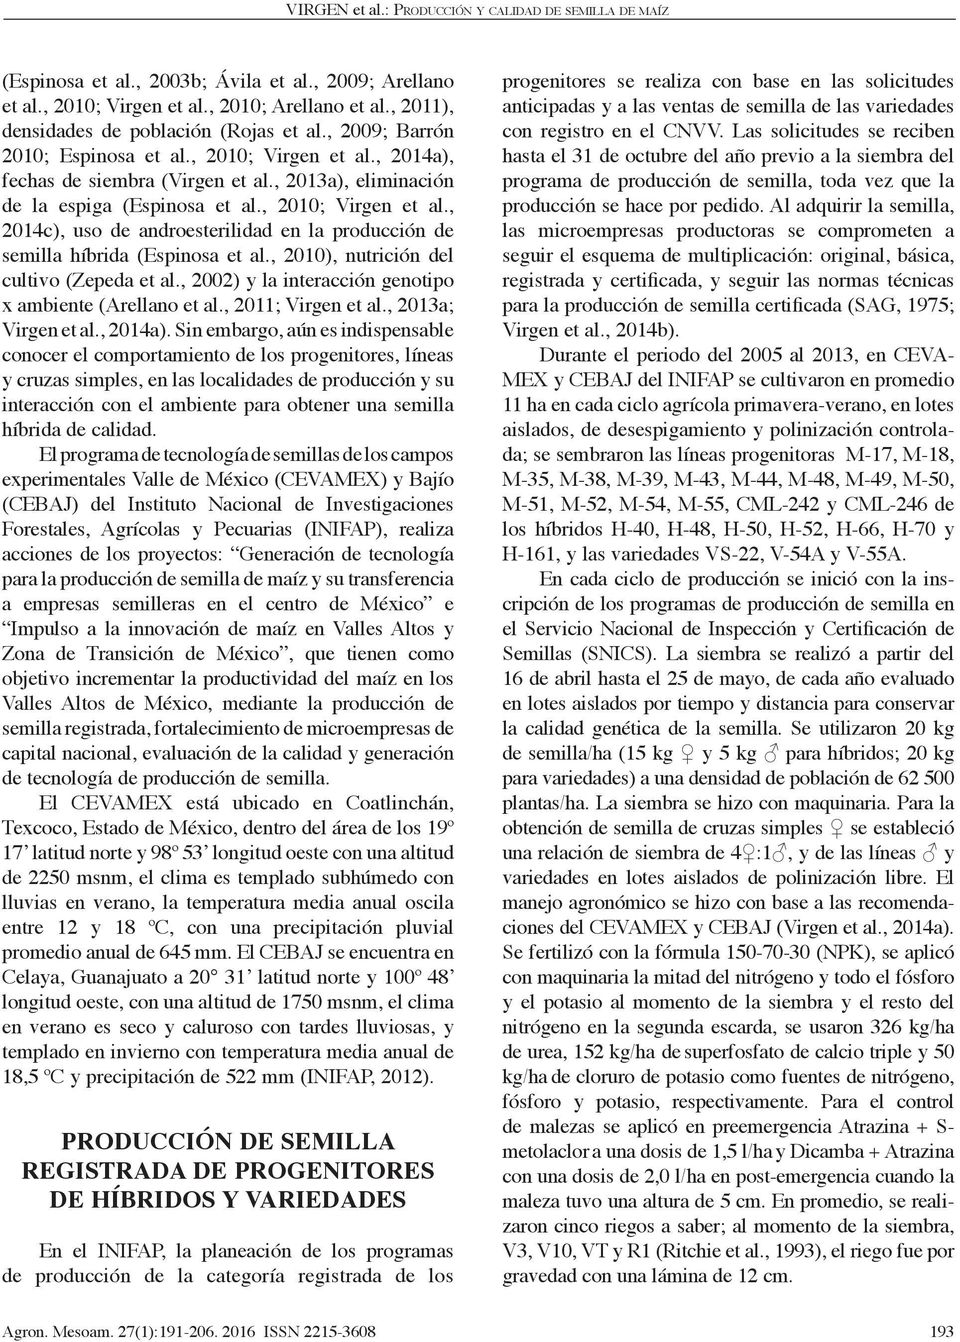 , 2010), nutrición del cultivo (Zepeda et al., 2002) y la interacción genotipo x ambiente (Arellano et al., 2011; Virgen et al., 2013a; Virgen et al., 2014a).